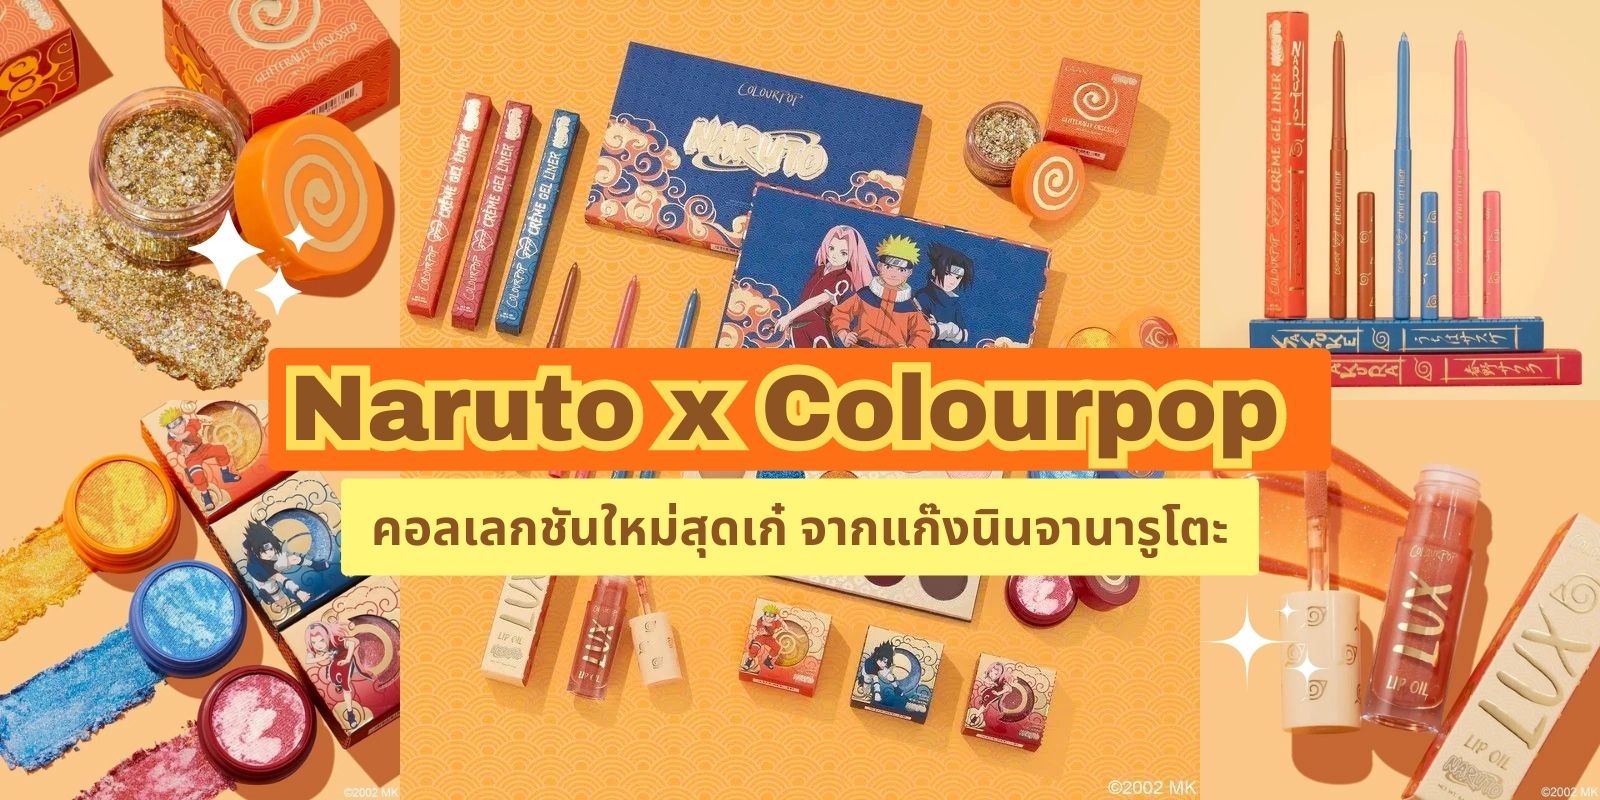 เมคอัพลิมิเต็ด Naruto x Colourpop